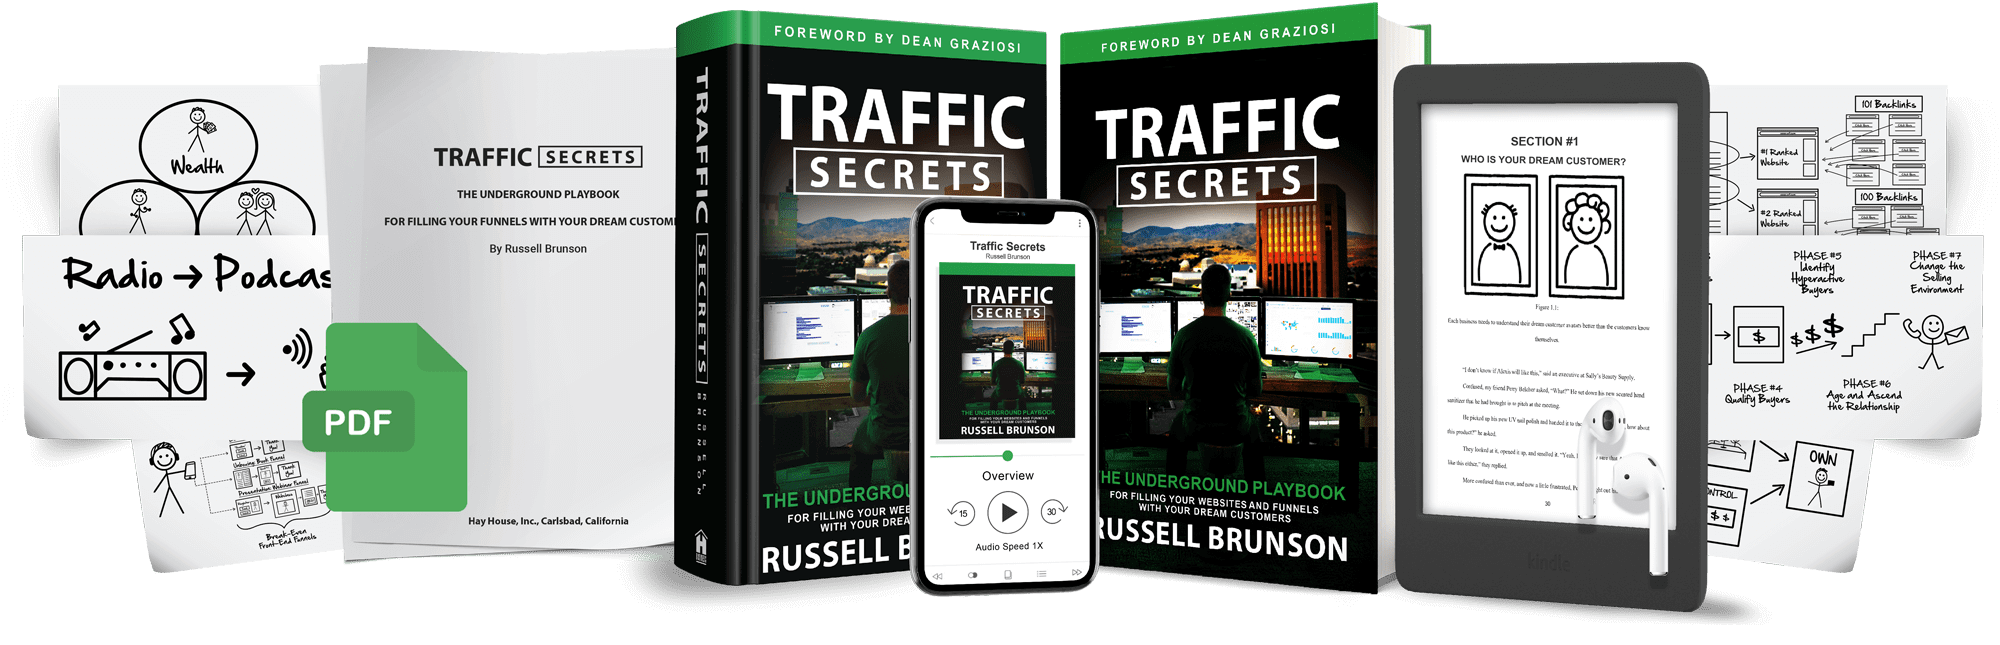 Traffic-Secrets_pdf-audiobook-min